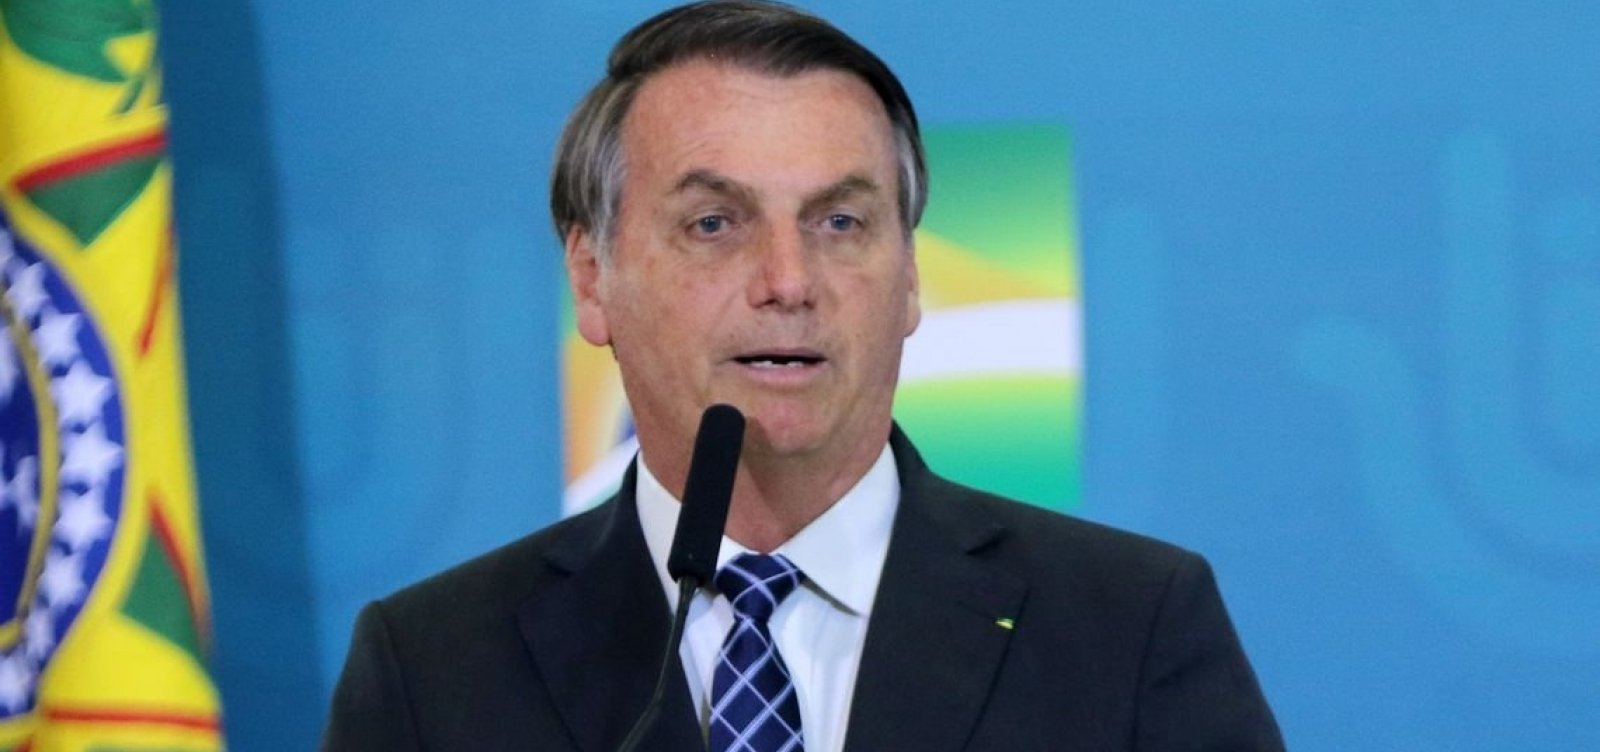 Ação de Bolsonaro contra governadores no STF agravou tensão no Congresso, diz coluna